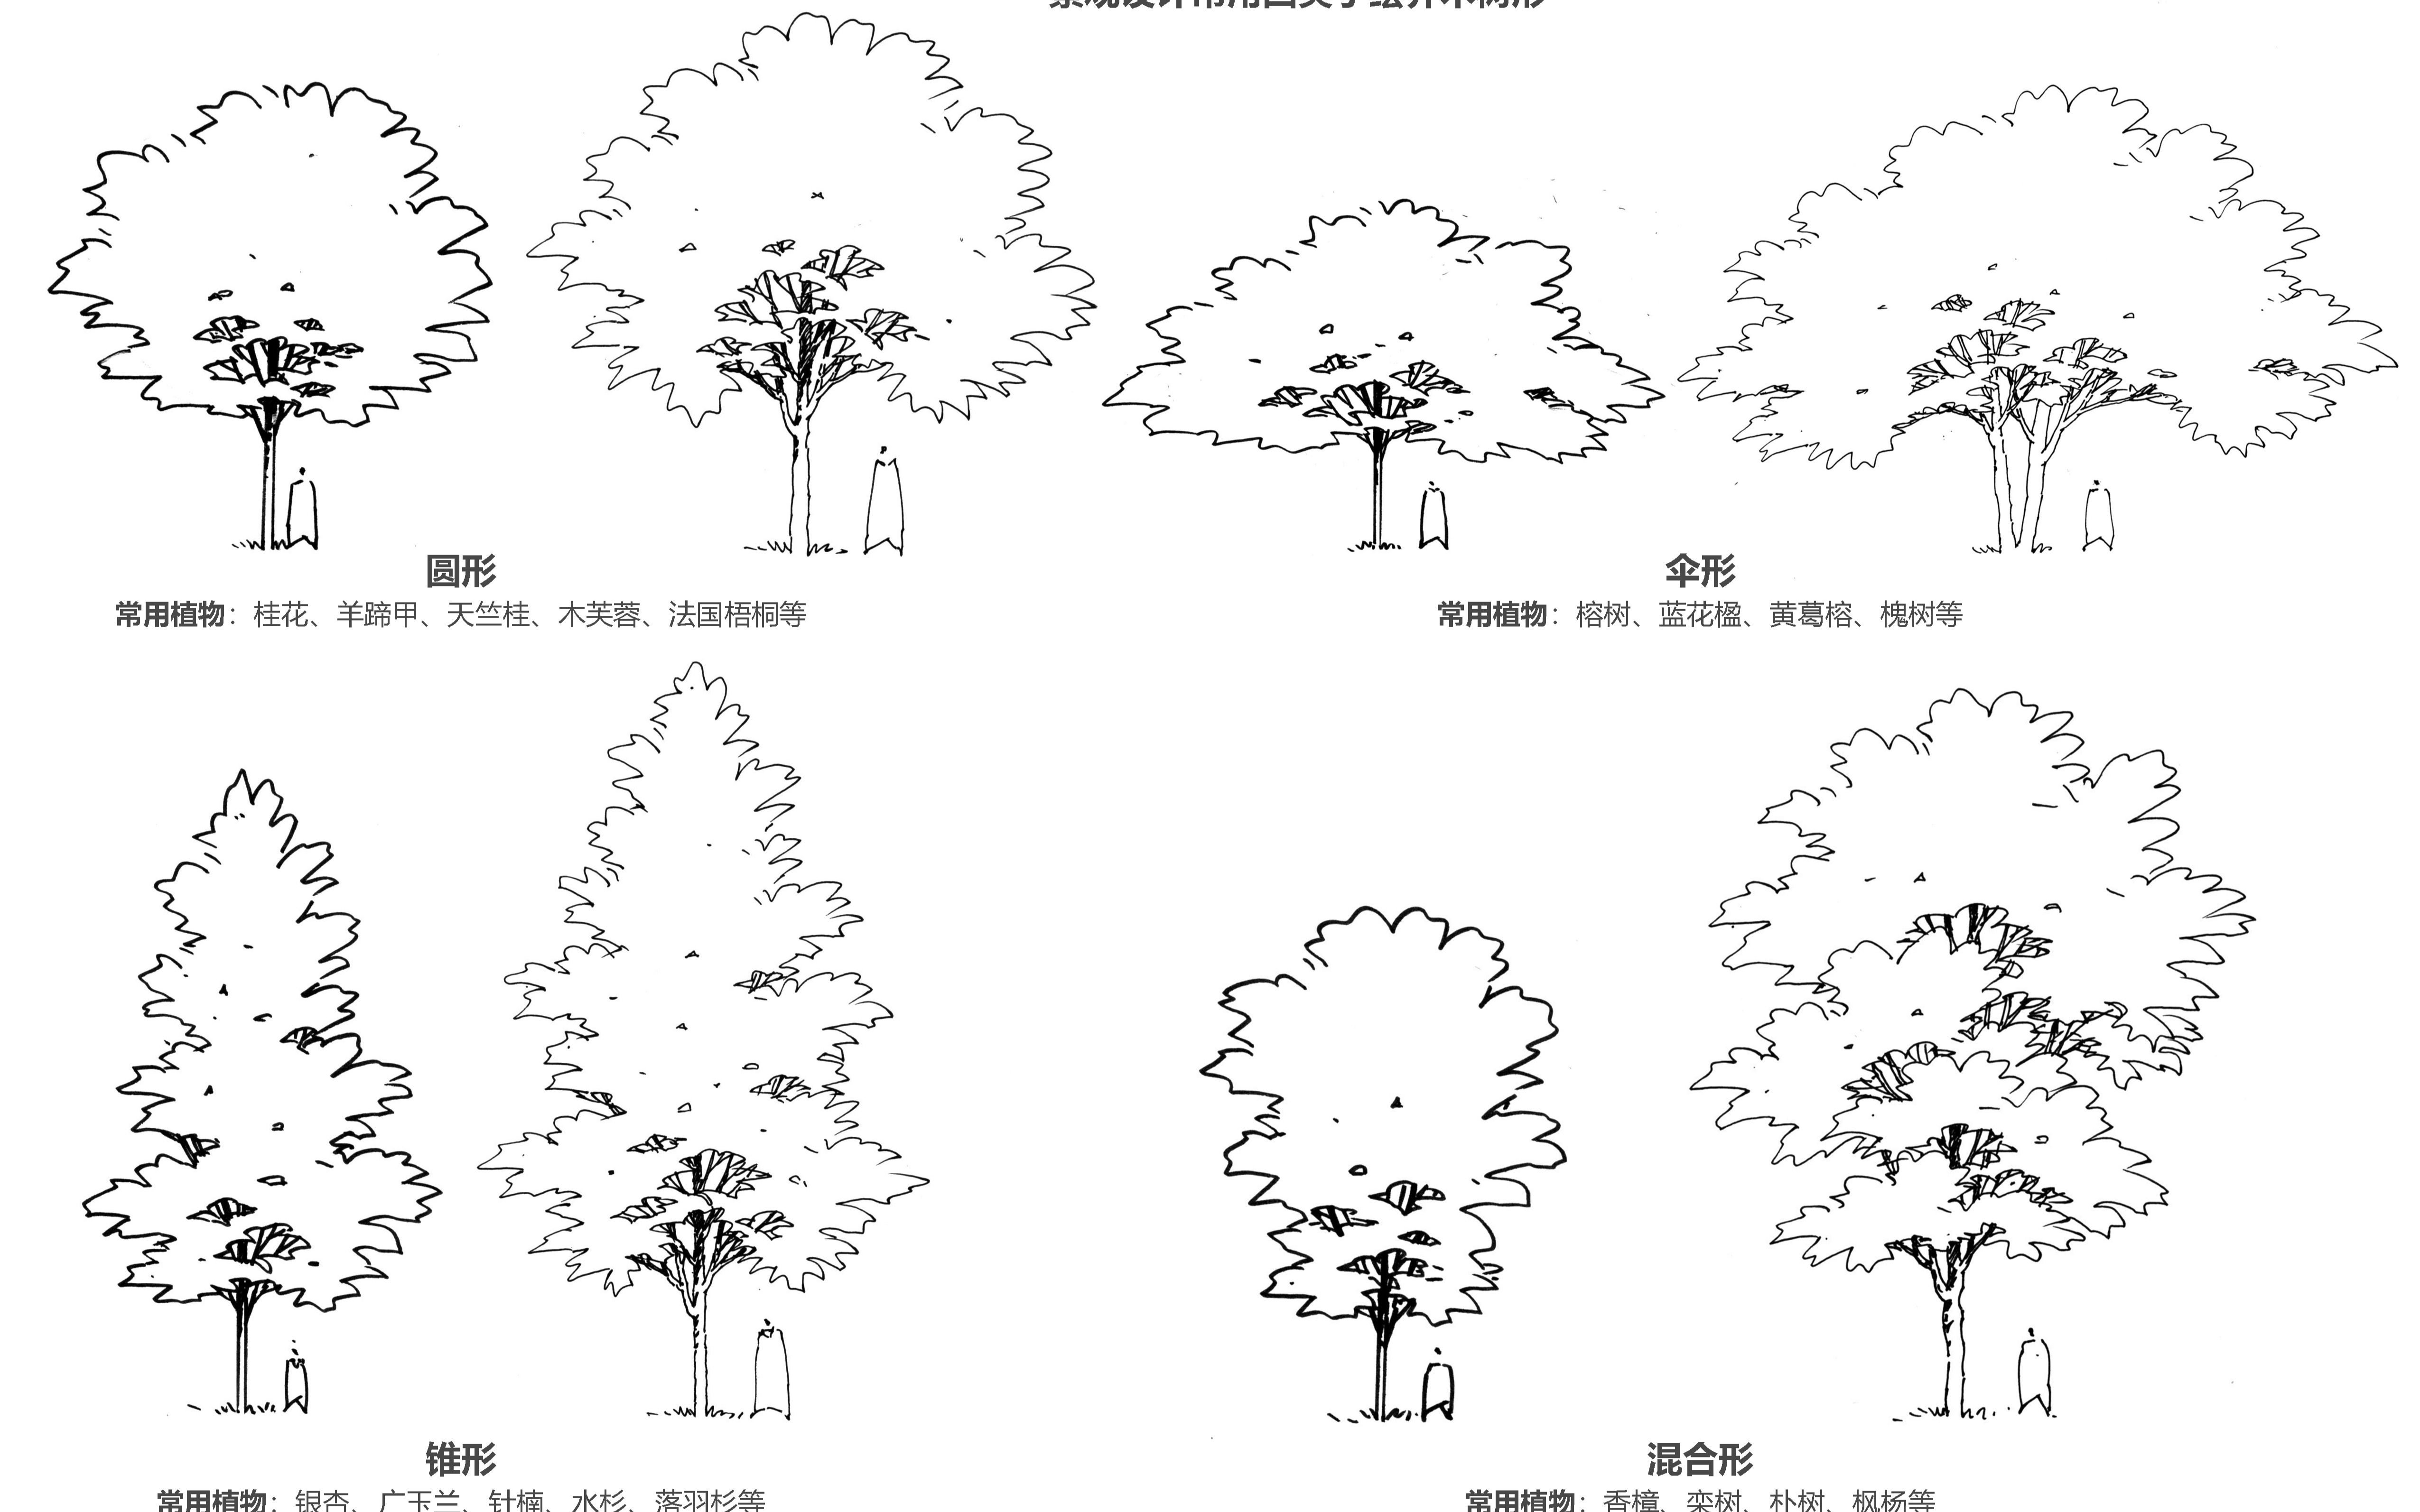 黑白线稿剪影树形状图片素材免费下载 - 觅知网